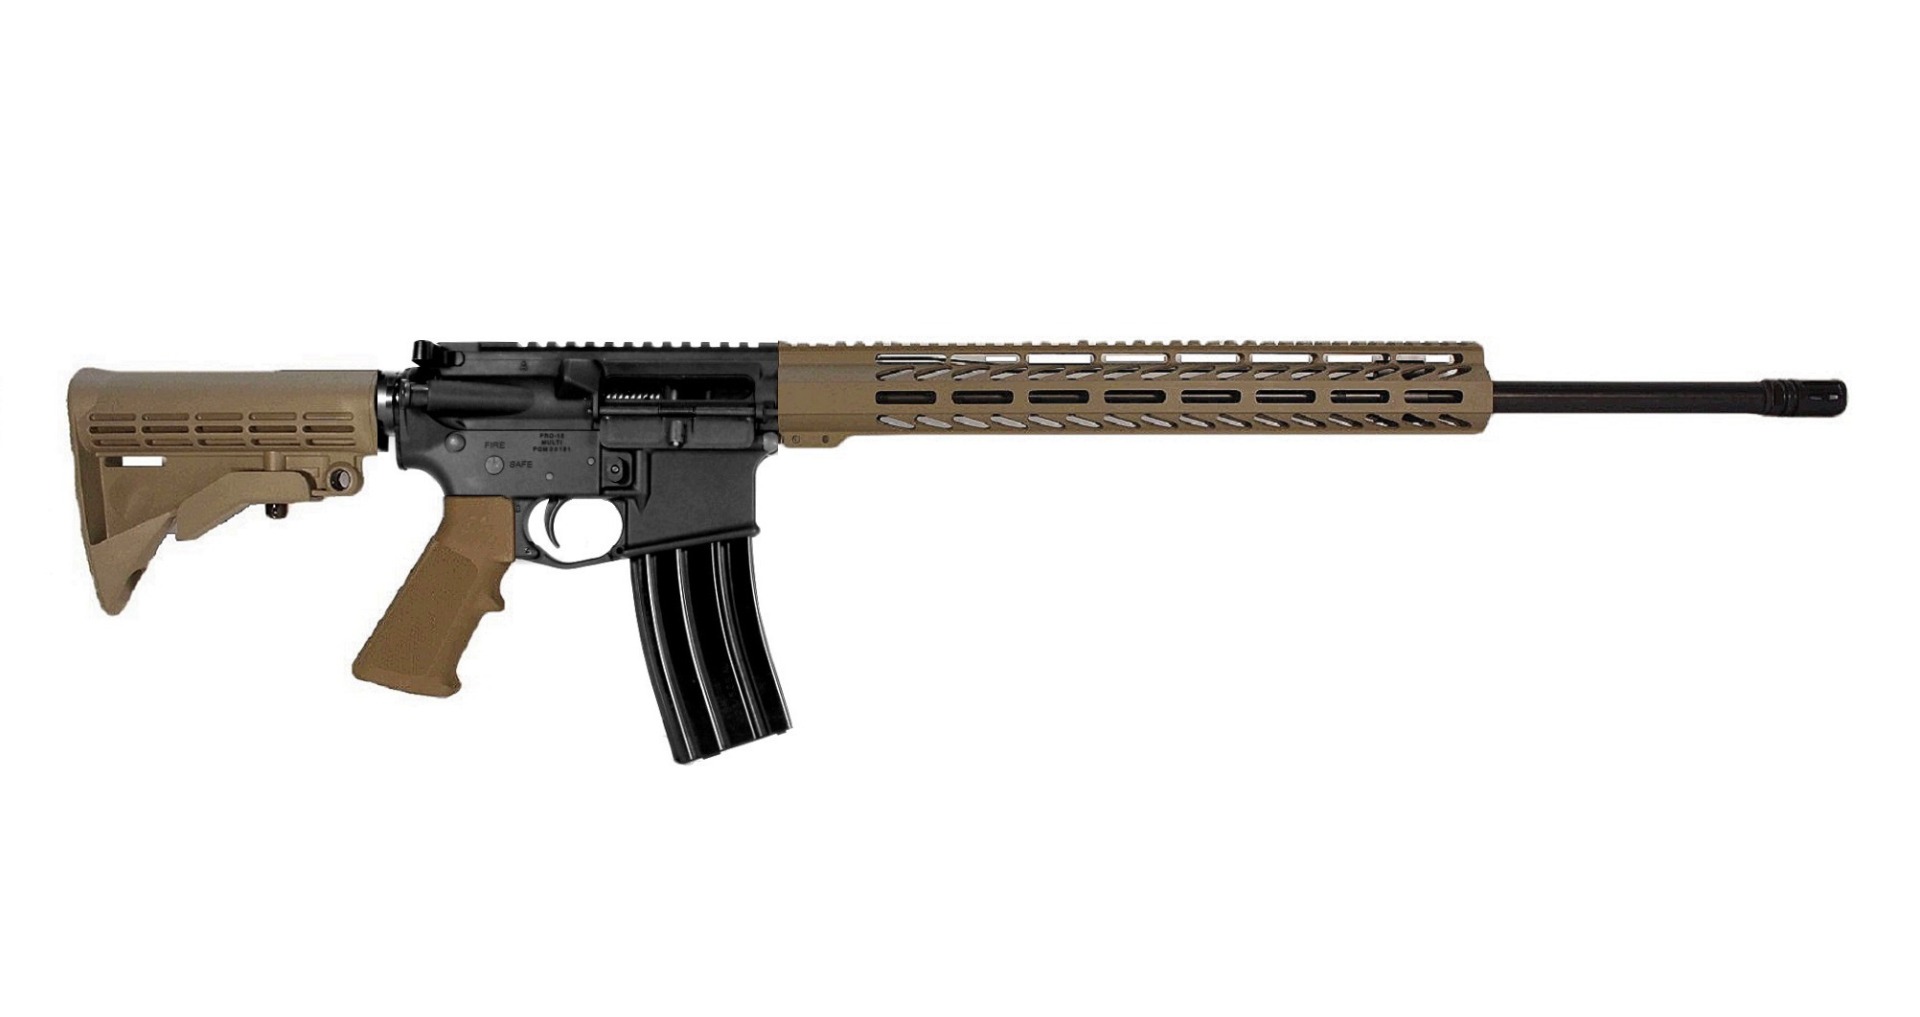 22 inch 6mm ARC AR-15 Rifle in BLK/FDE